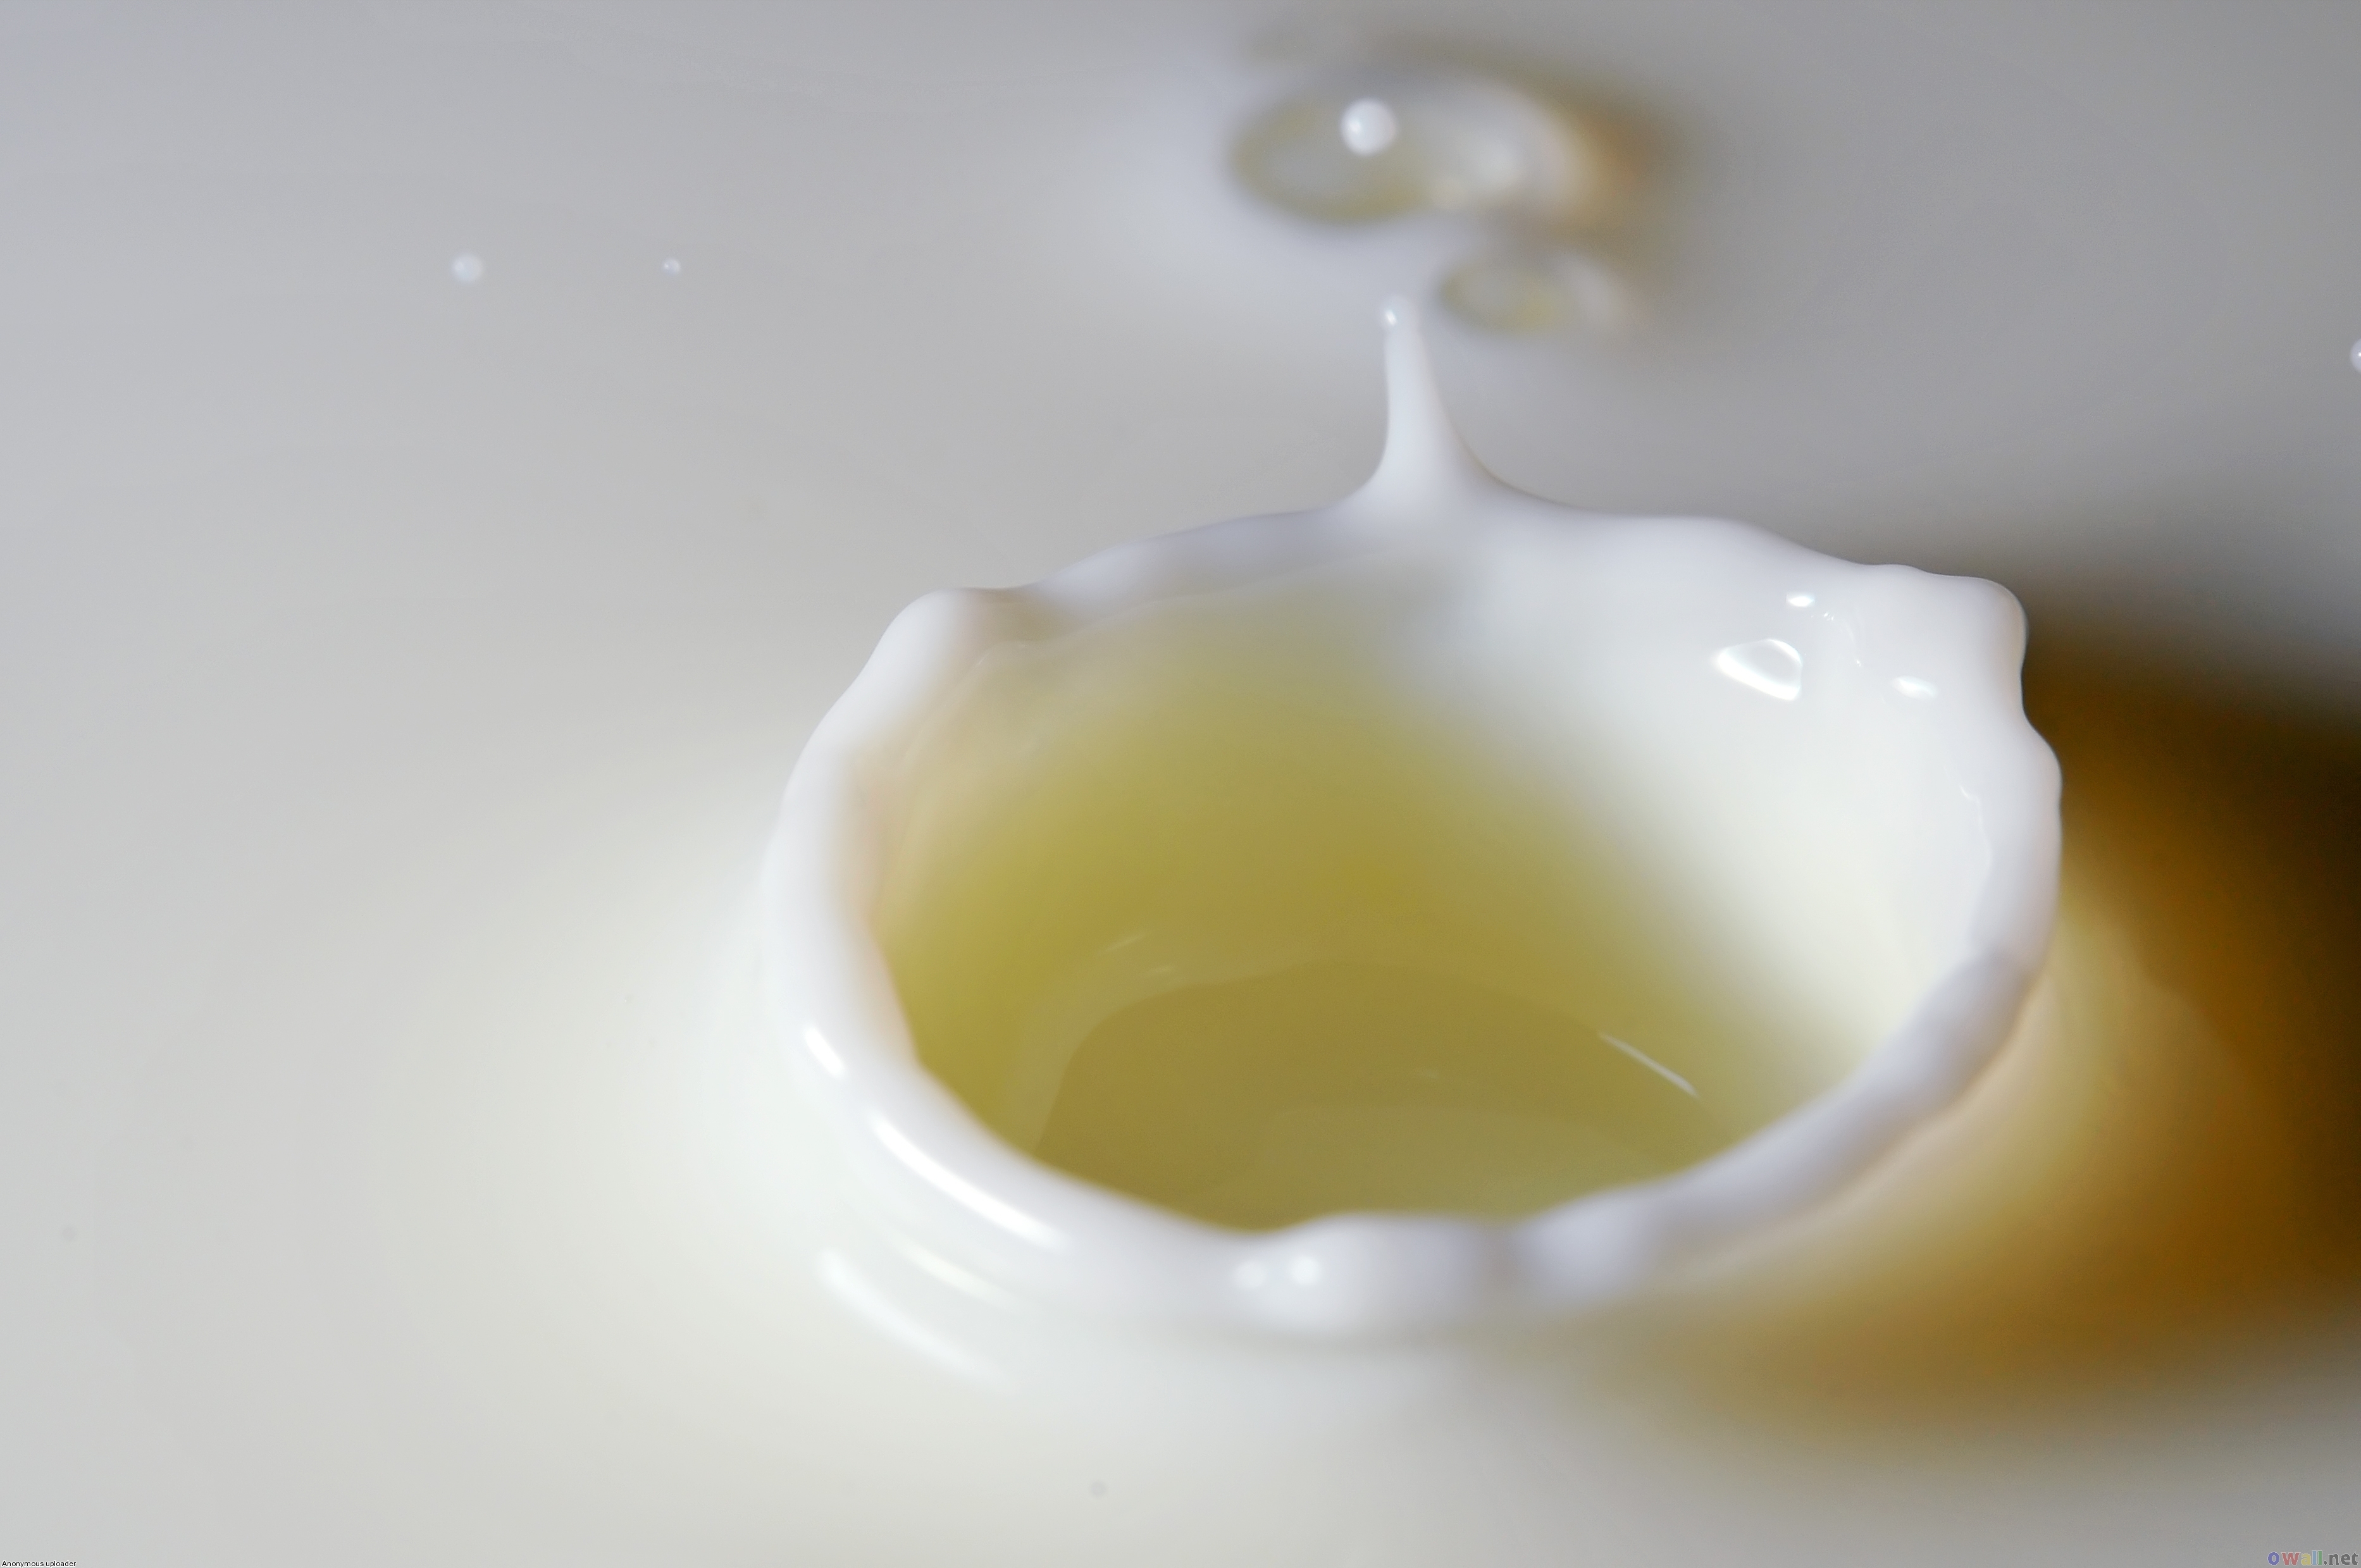 Welke factoren bepalen het melkvetgehalte?